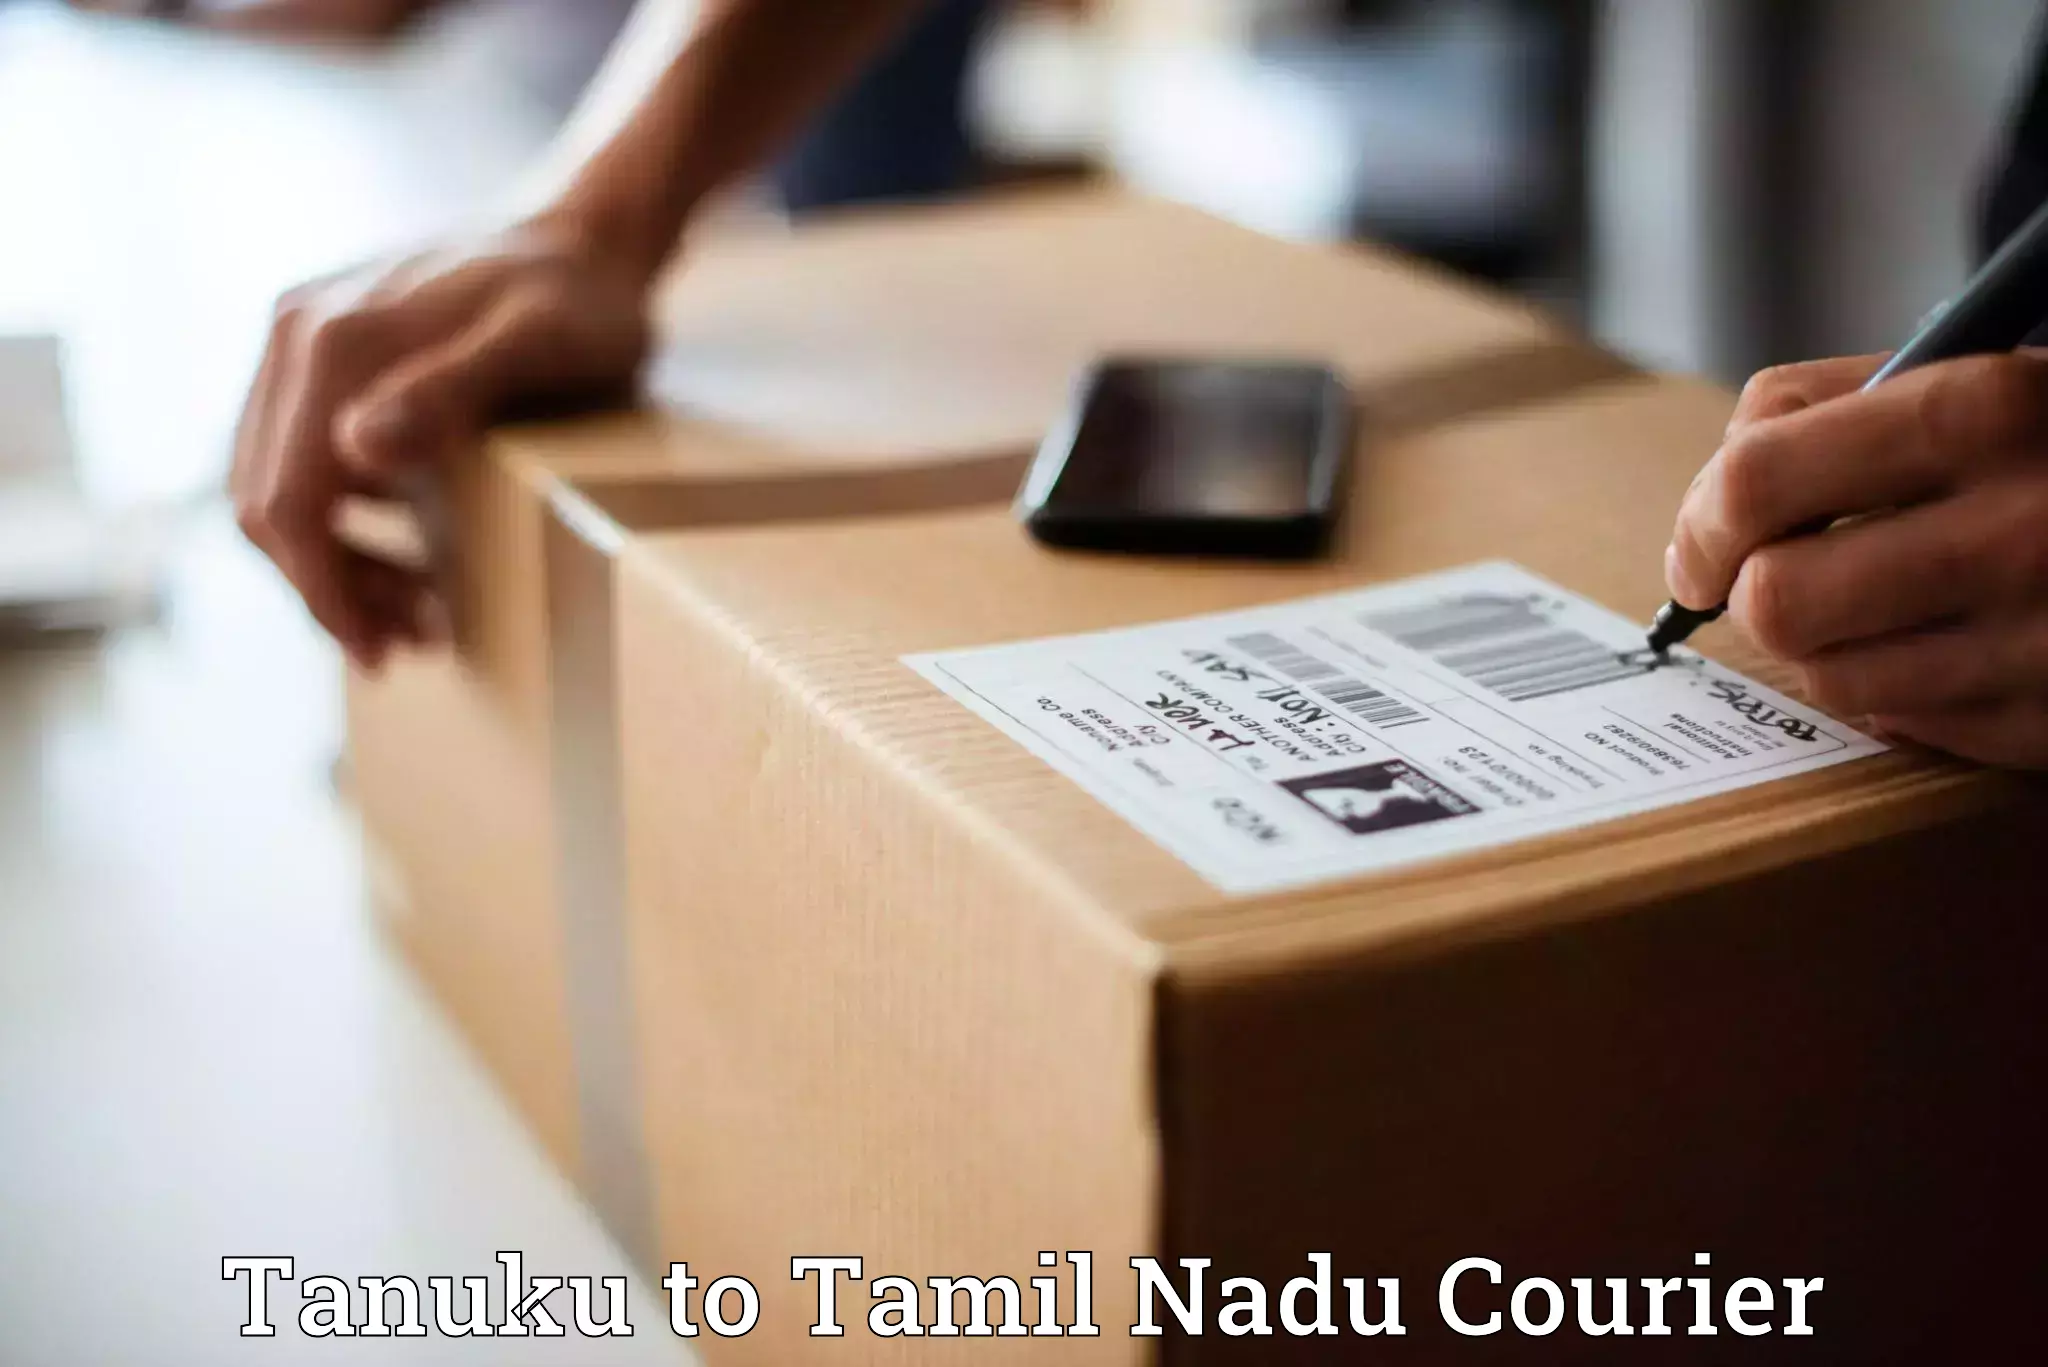 Tailored shipping plans Tanuku to Tamil Nadu